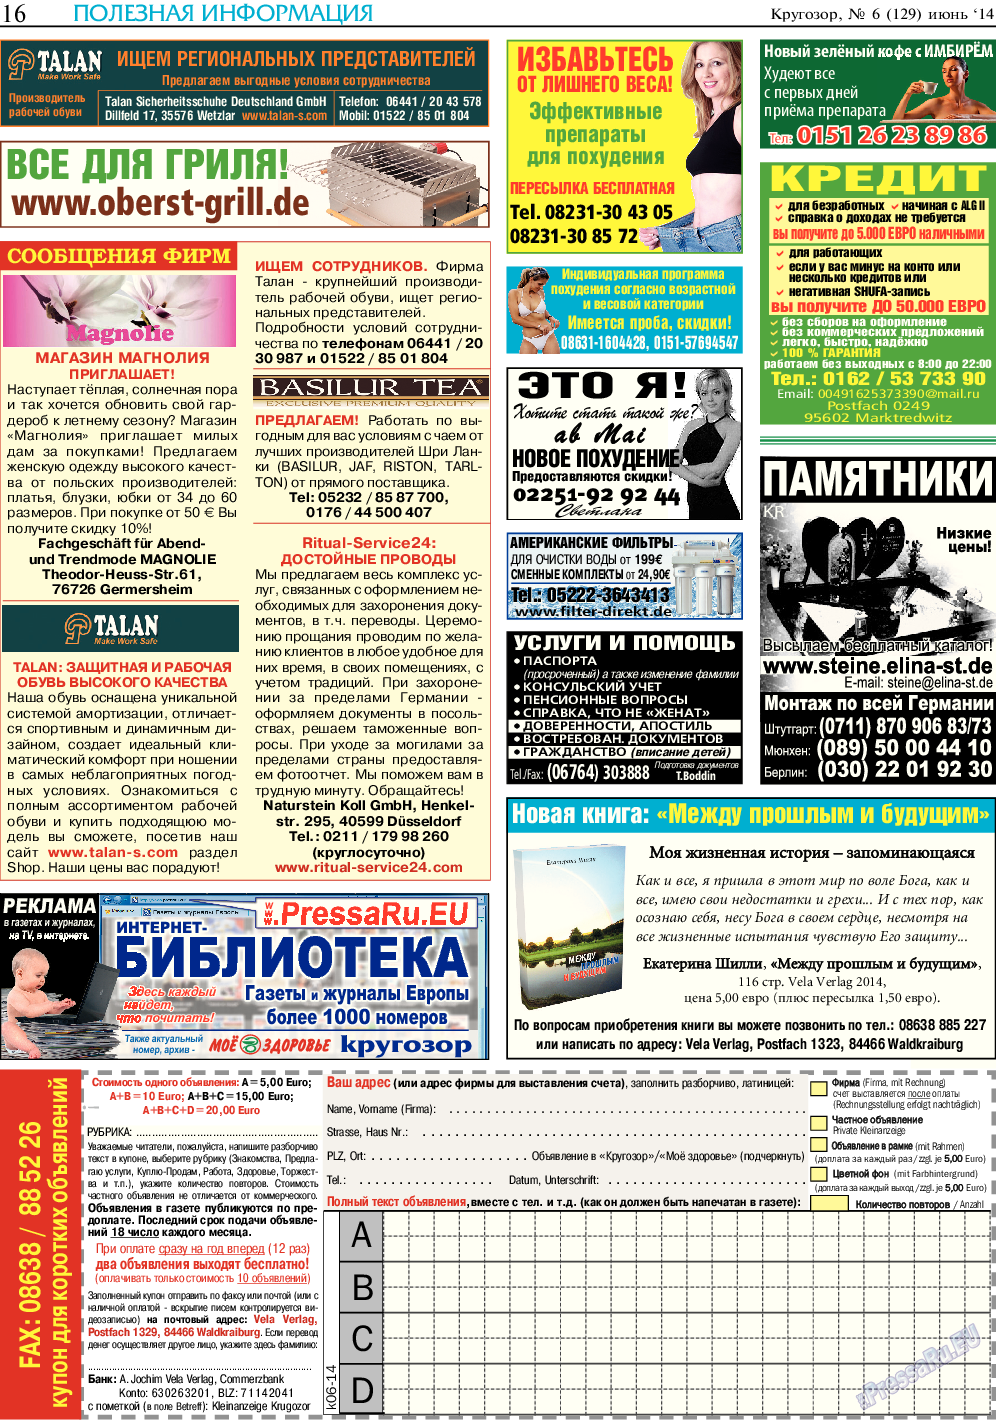 Кругозор, газета. 2014 №6 стр.16